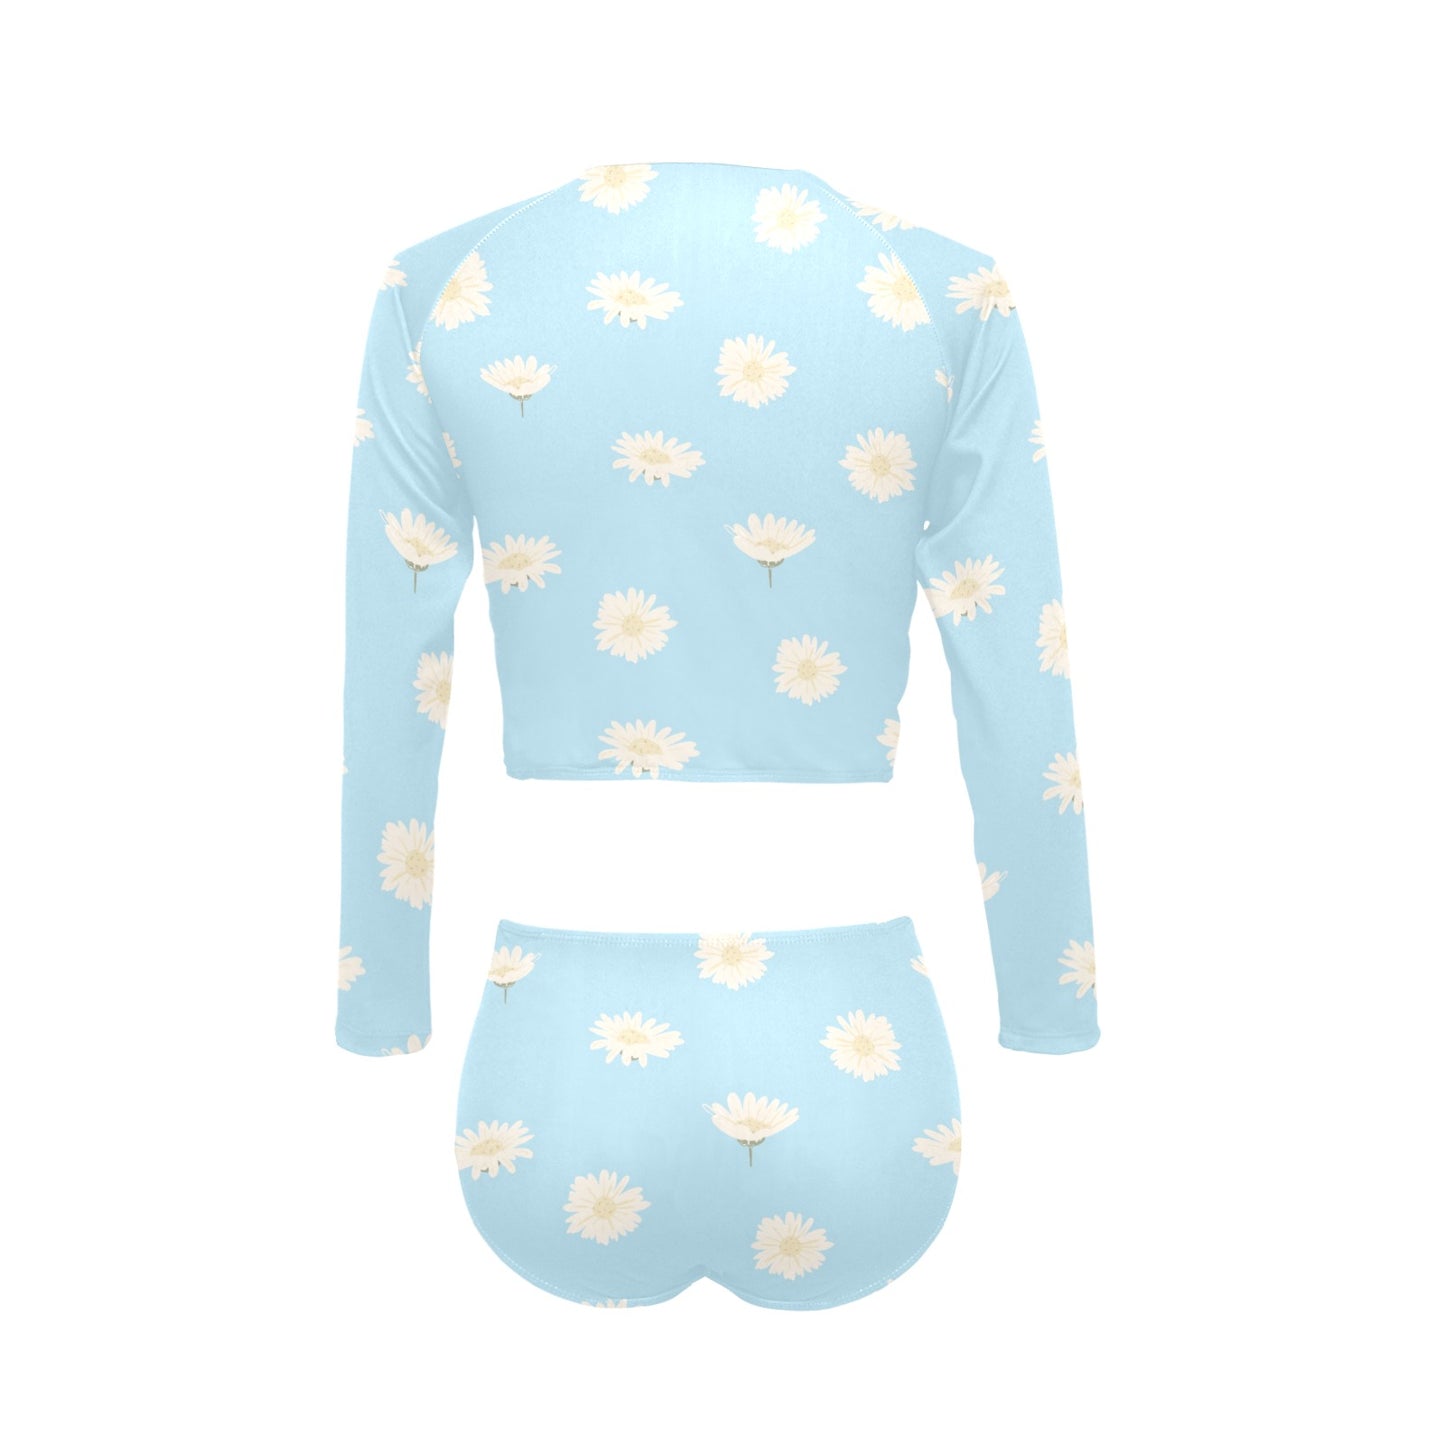 Blue Daisy's Long Sleeve Swimsuit Set